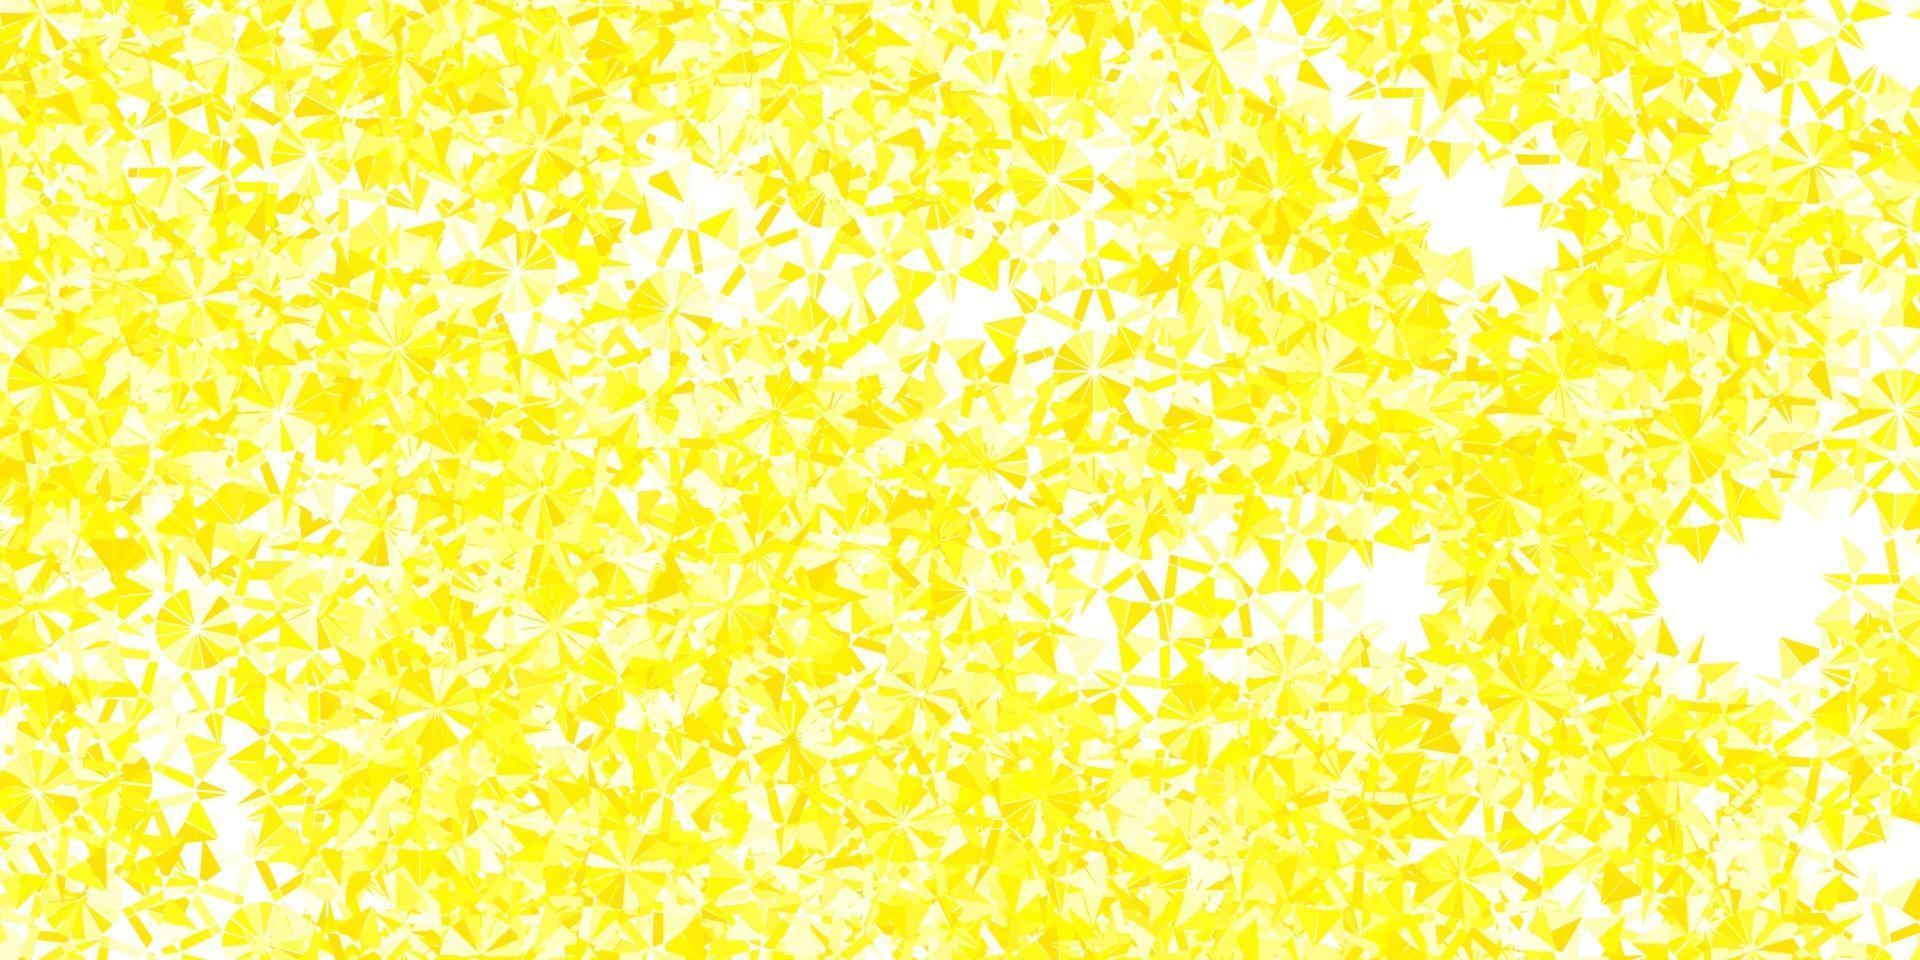 modelo de vetor amarelo claro com flocos de neve de gelo.